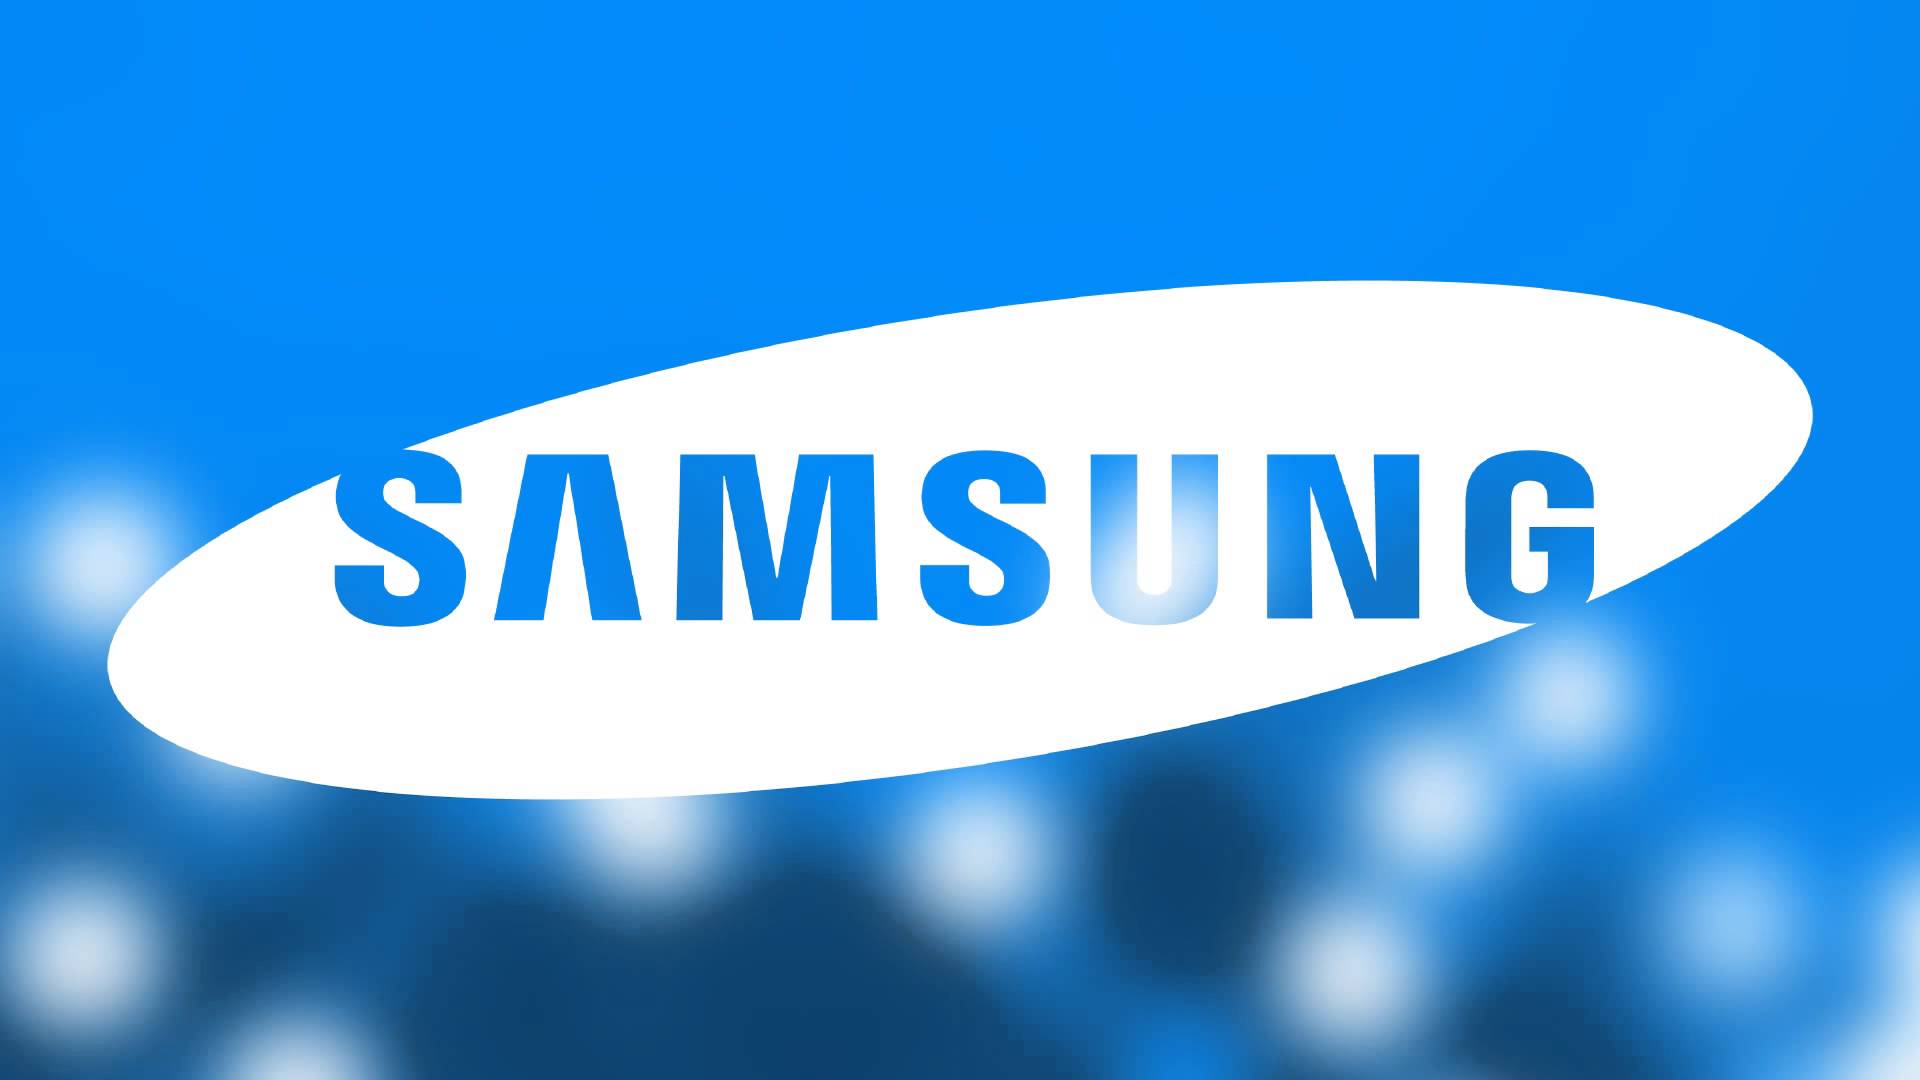  Samsung travaillerait sur un haut parleur connecté sous Bixby